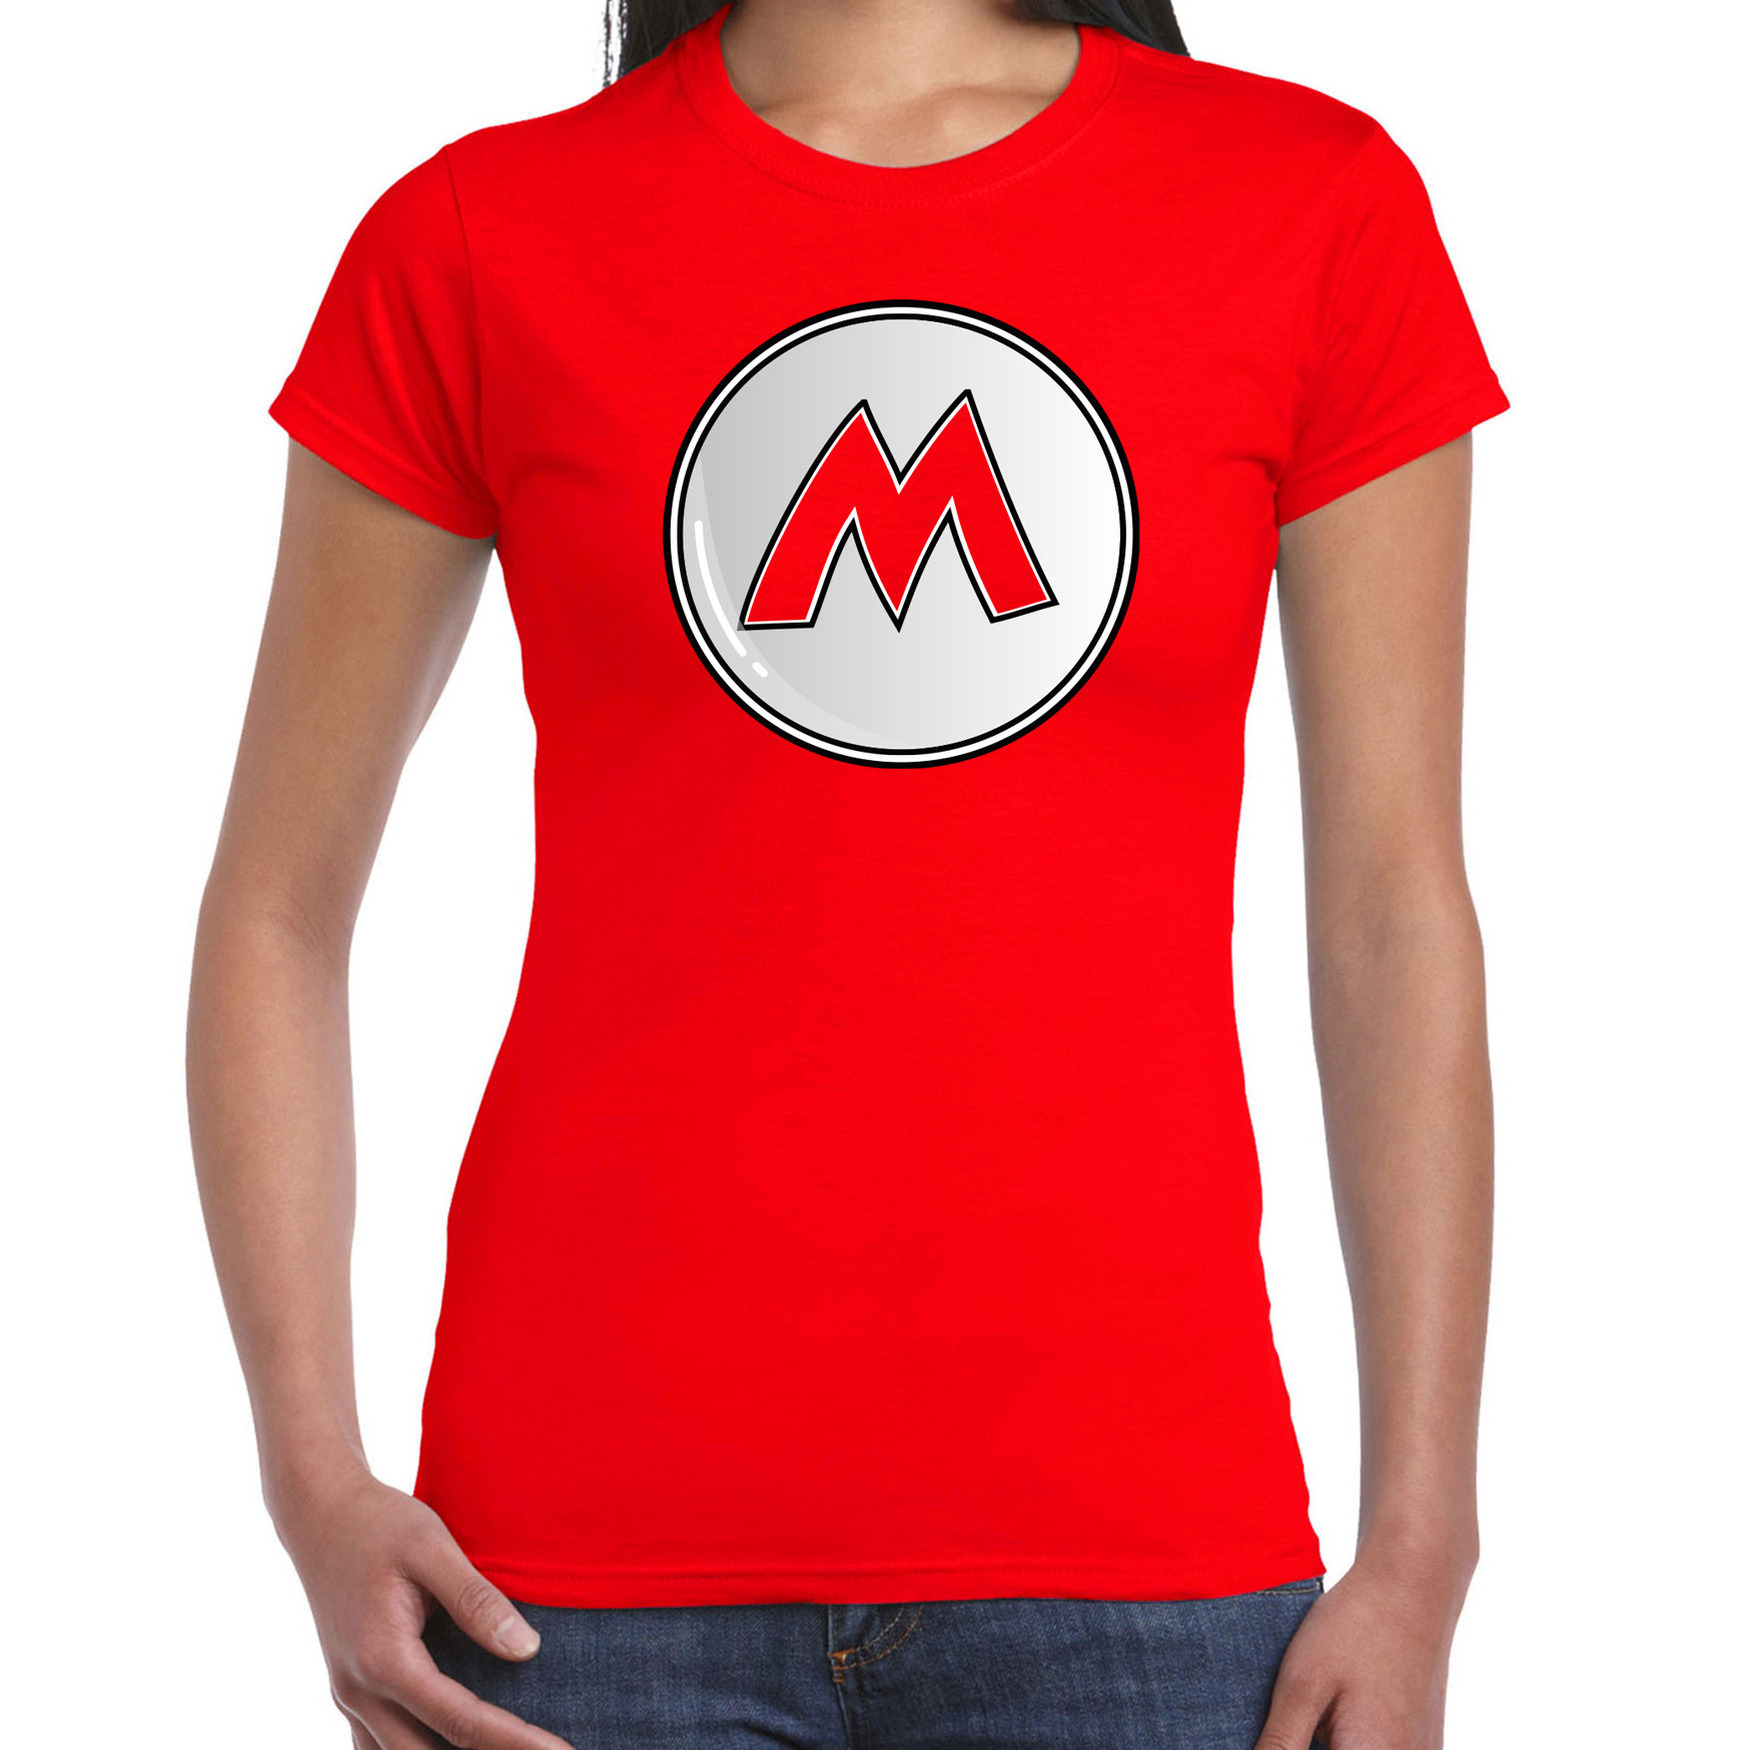 Game verkleed t-shirt voor dames loodgieter Mario rood carnaval-themafeest kostuum